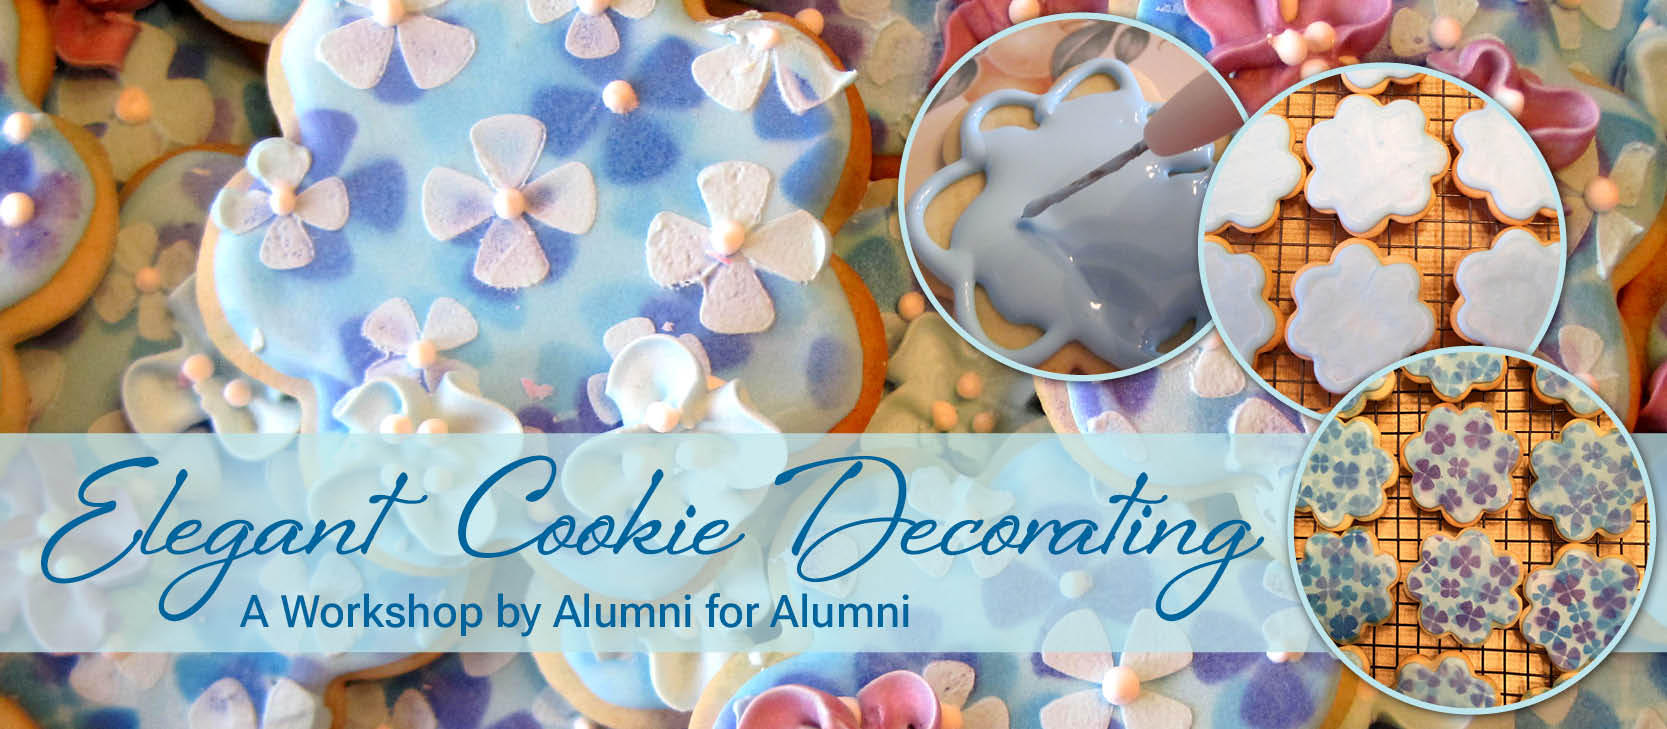 Elegant Cookie Decorating